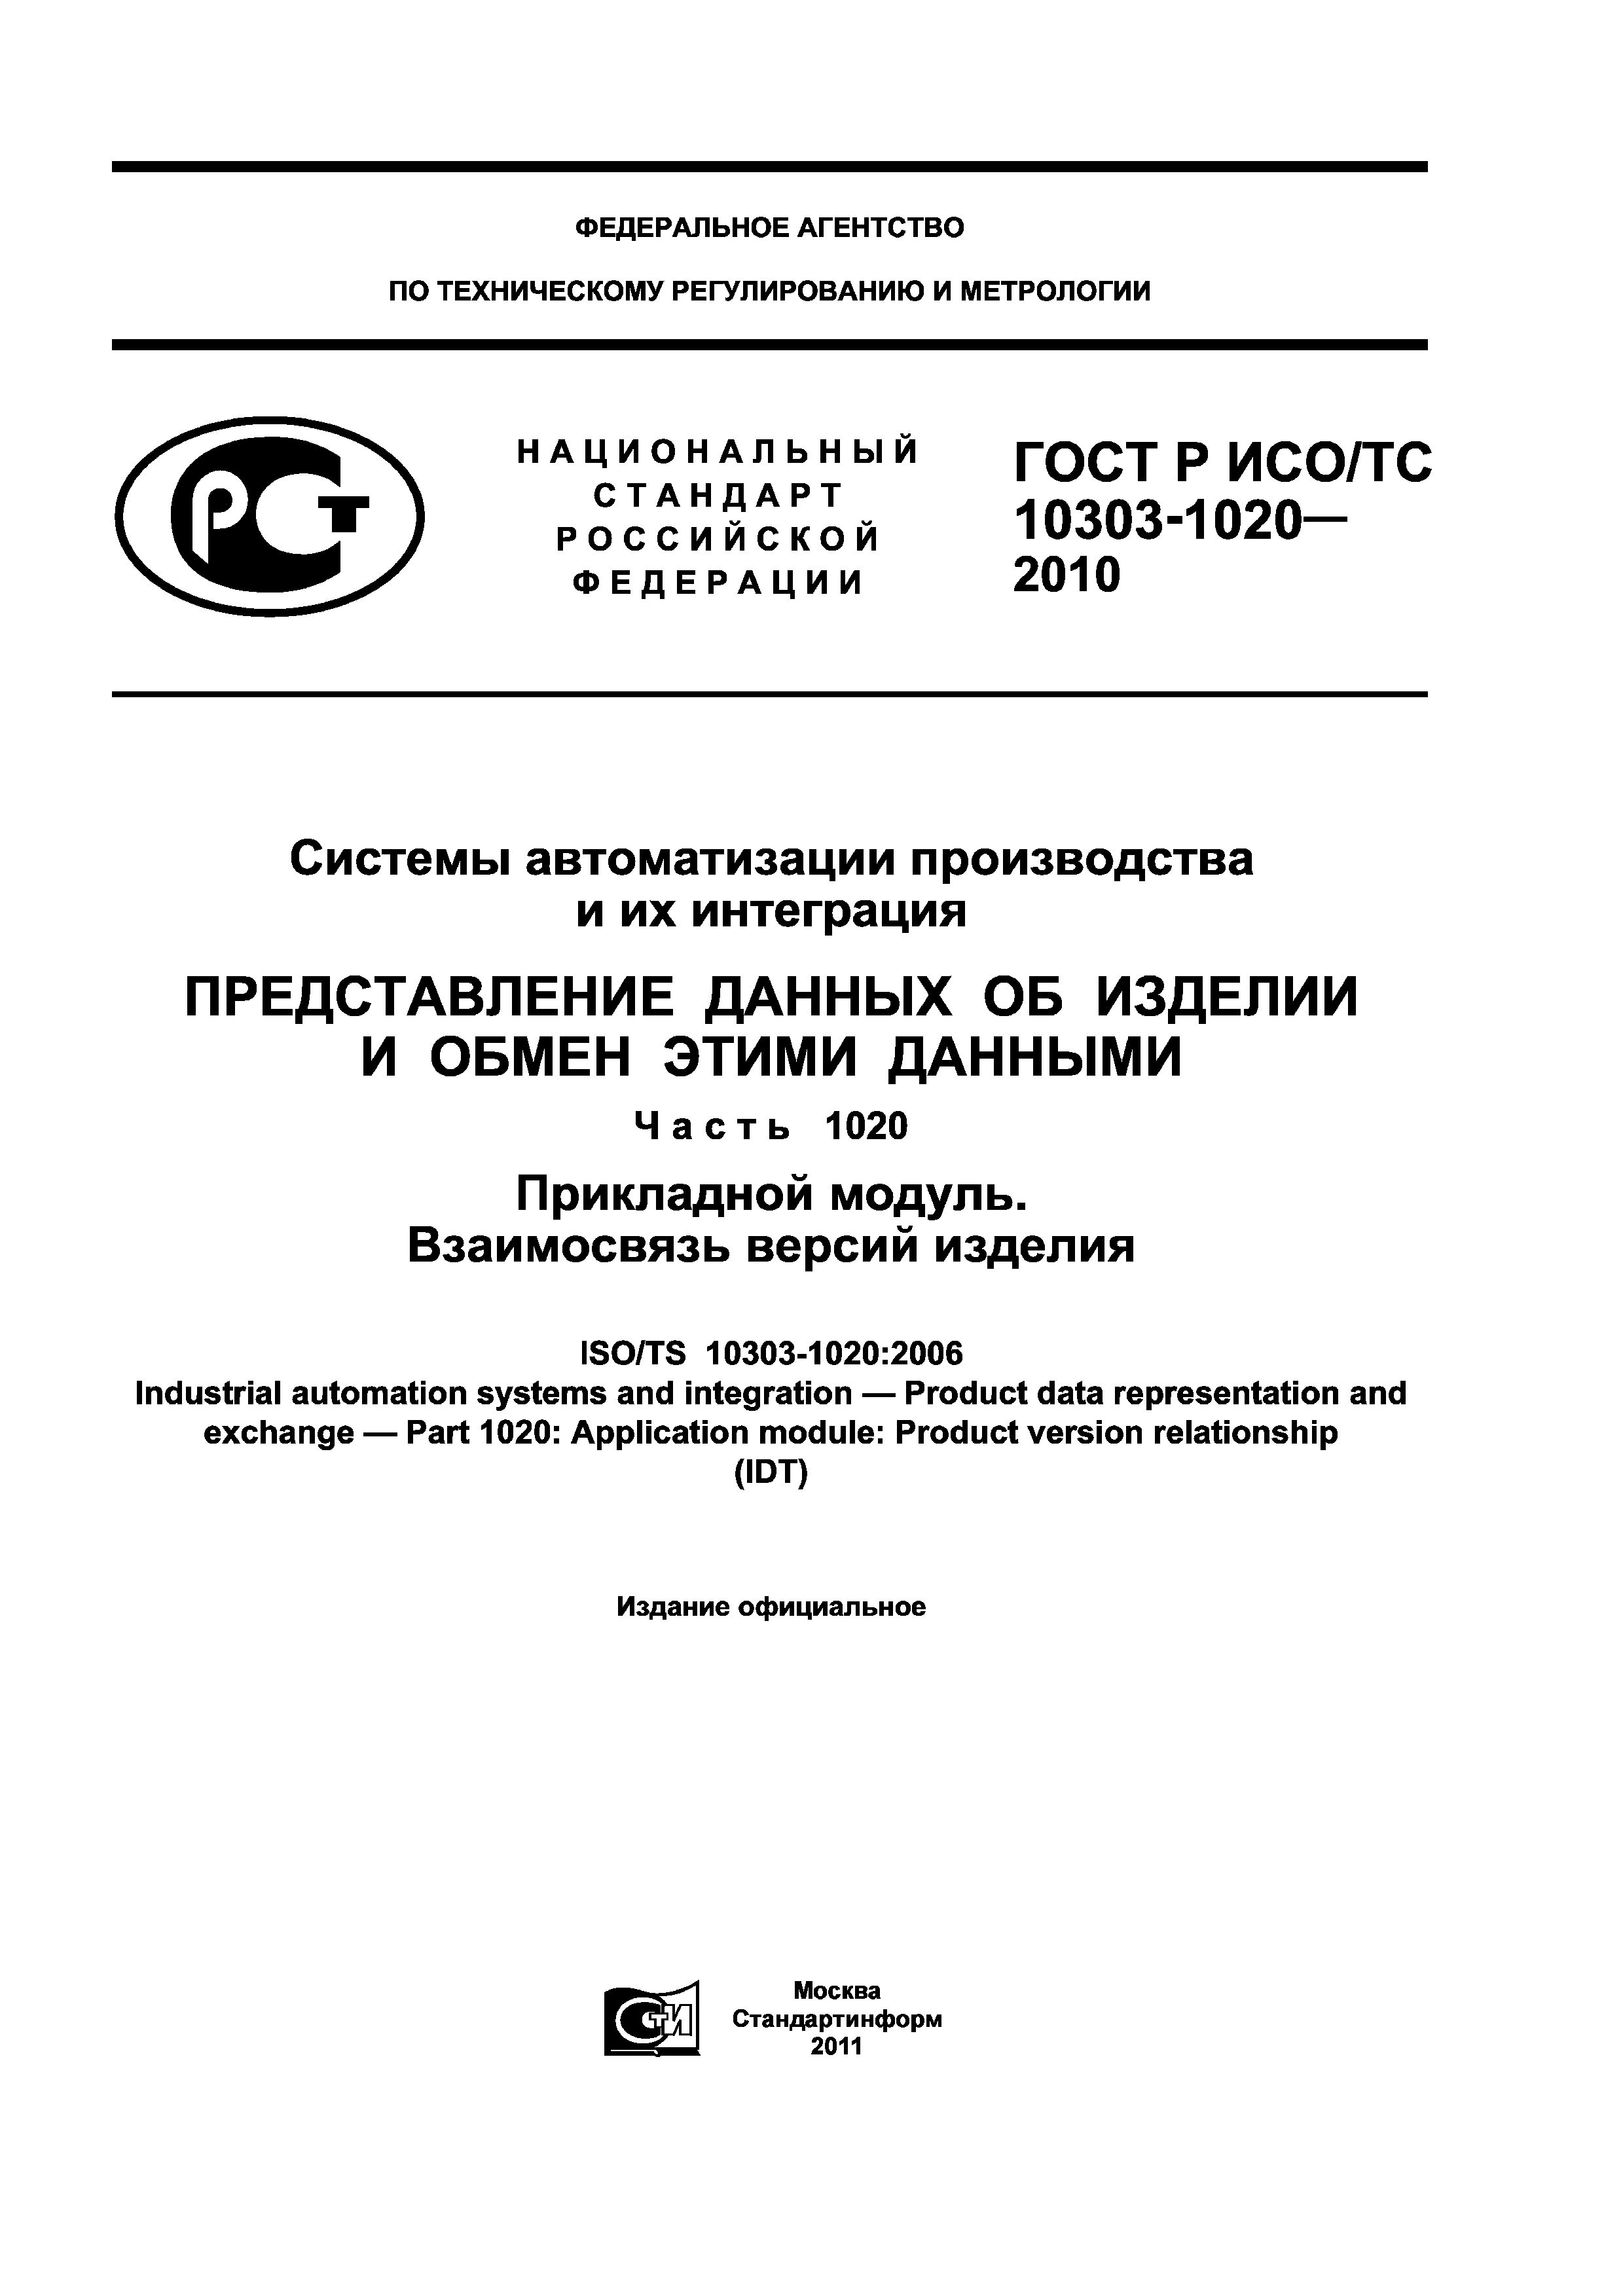 ГОСТ Р ИСО/ТС 10303-1020-2010